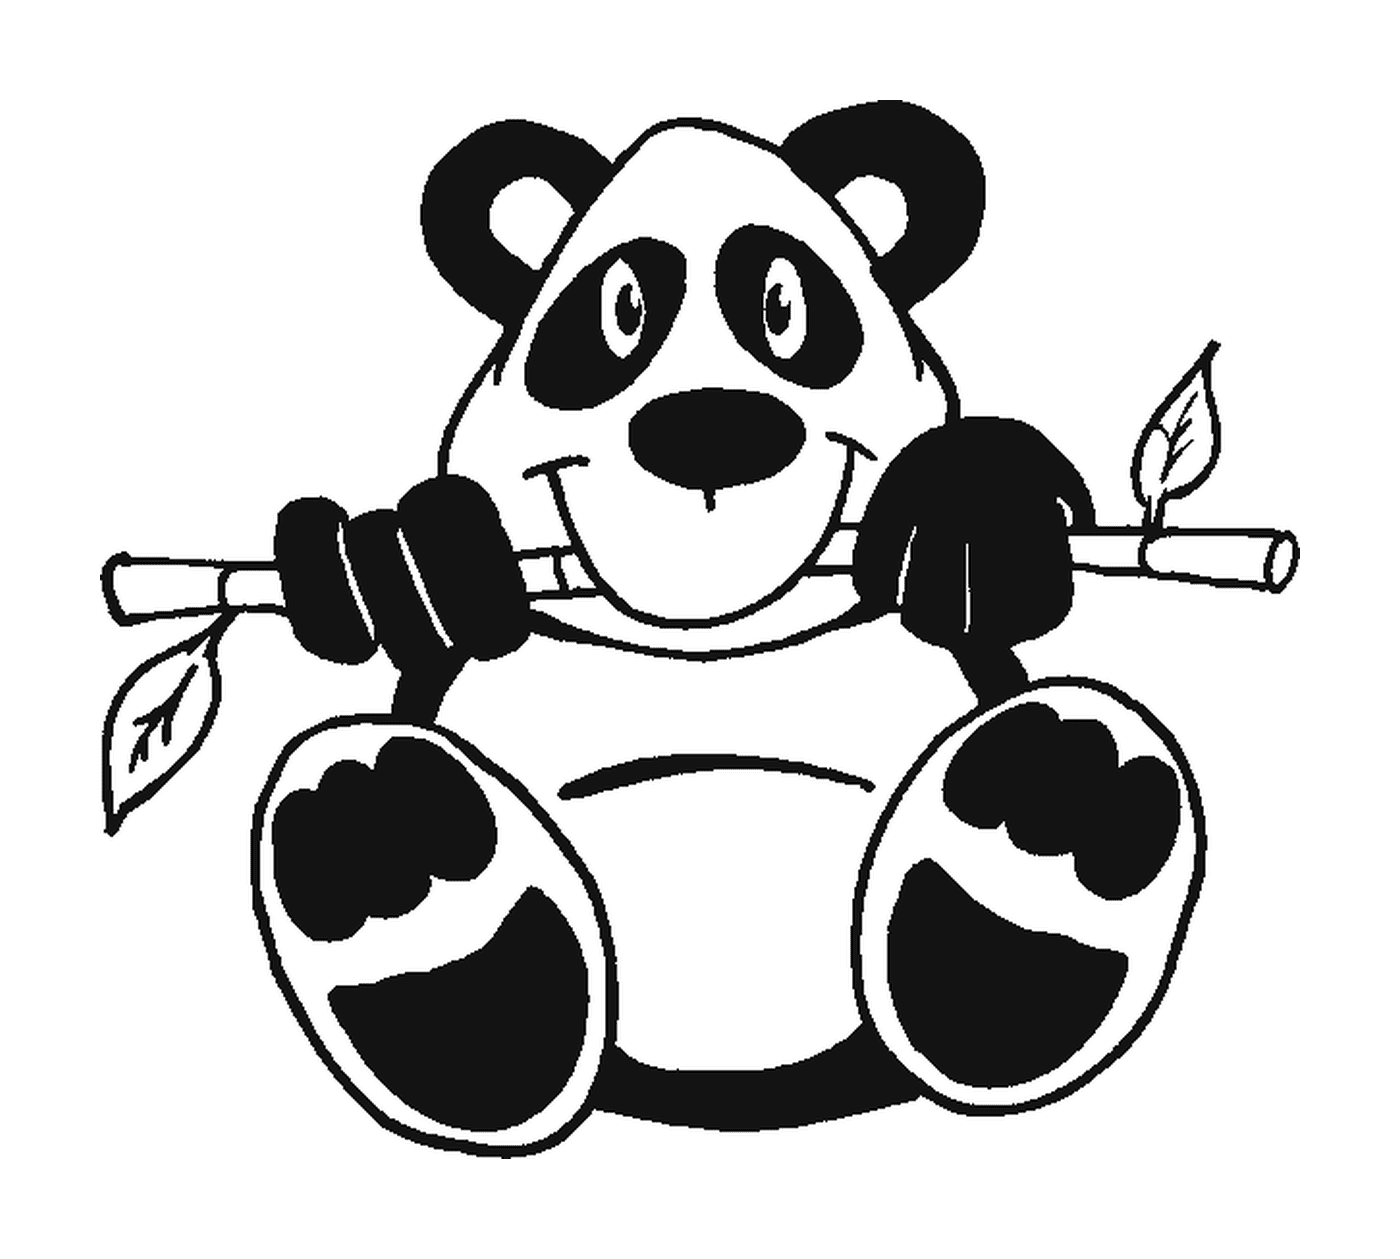  panda arroccato ramo superiore 